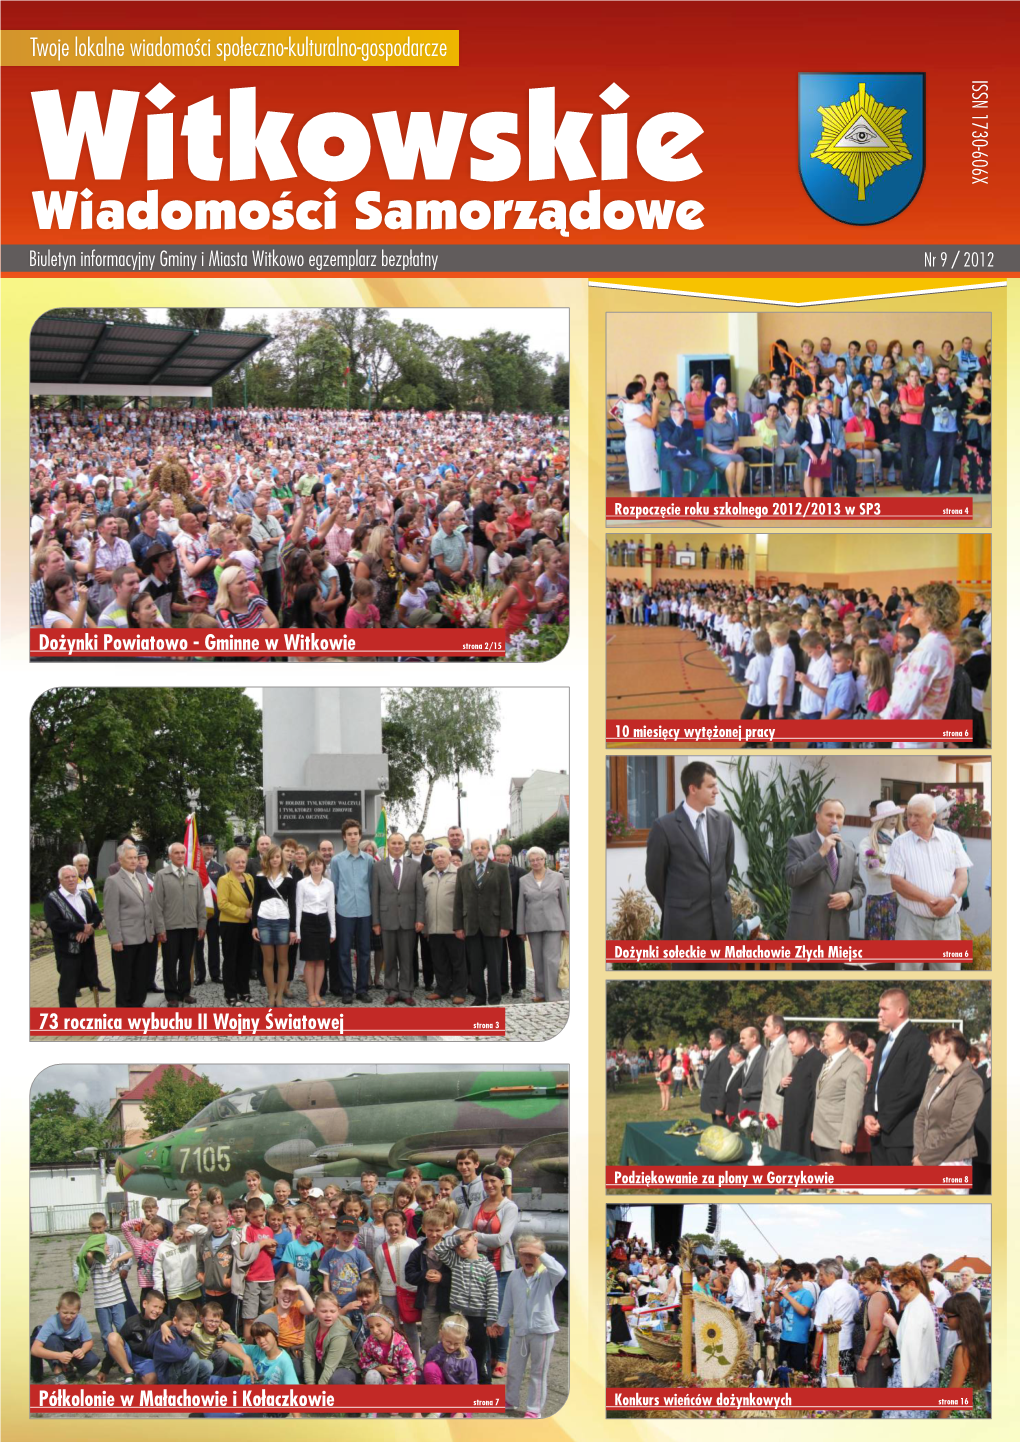 Twoje Lokalne Wiadomości Społeczno-Kulturalno-Gospodarcze ISSN 1730-606X